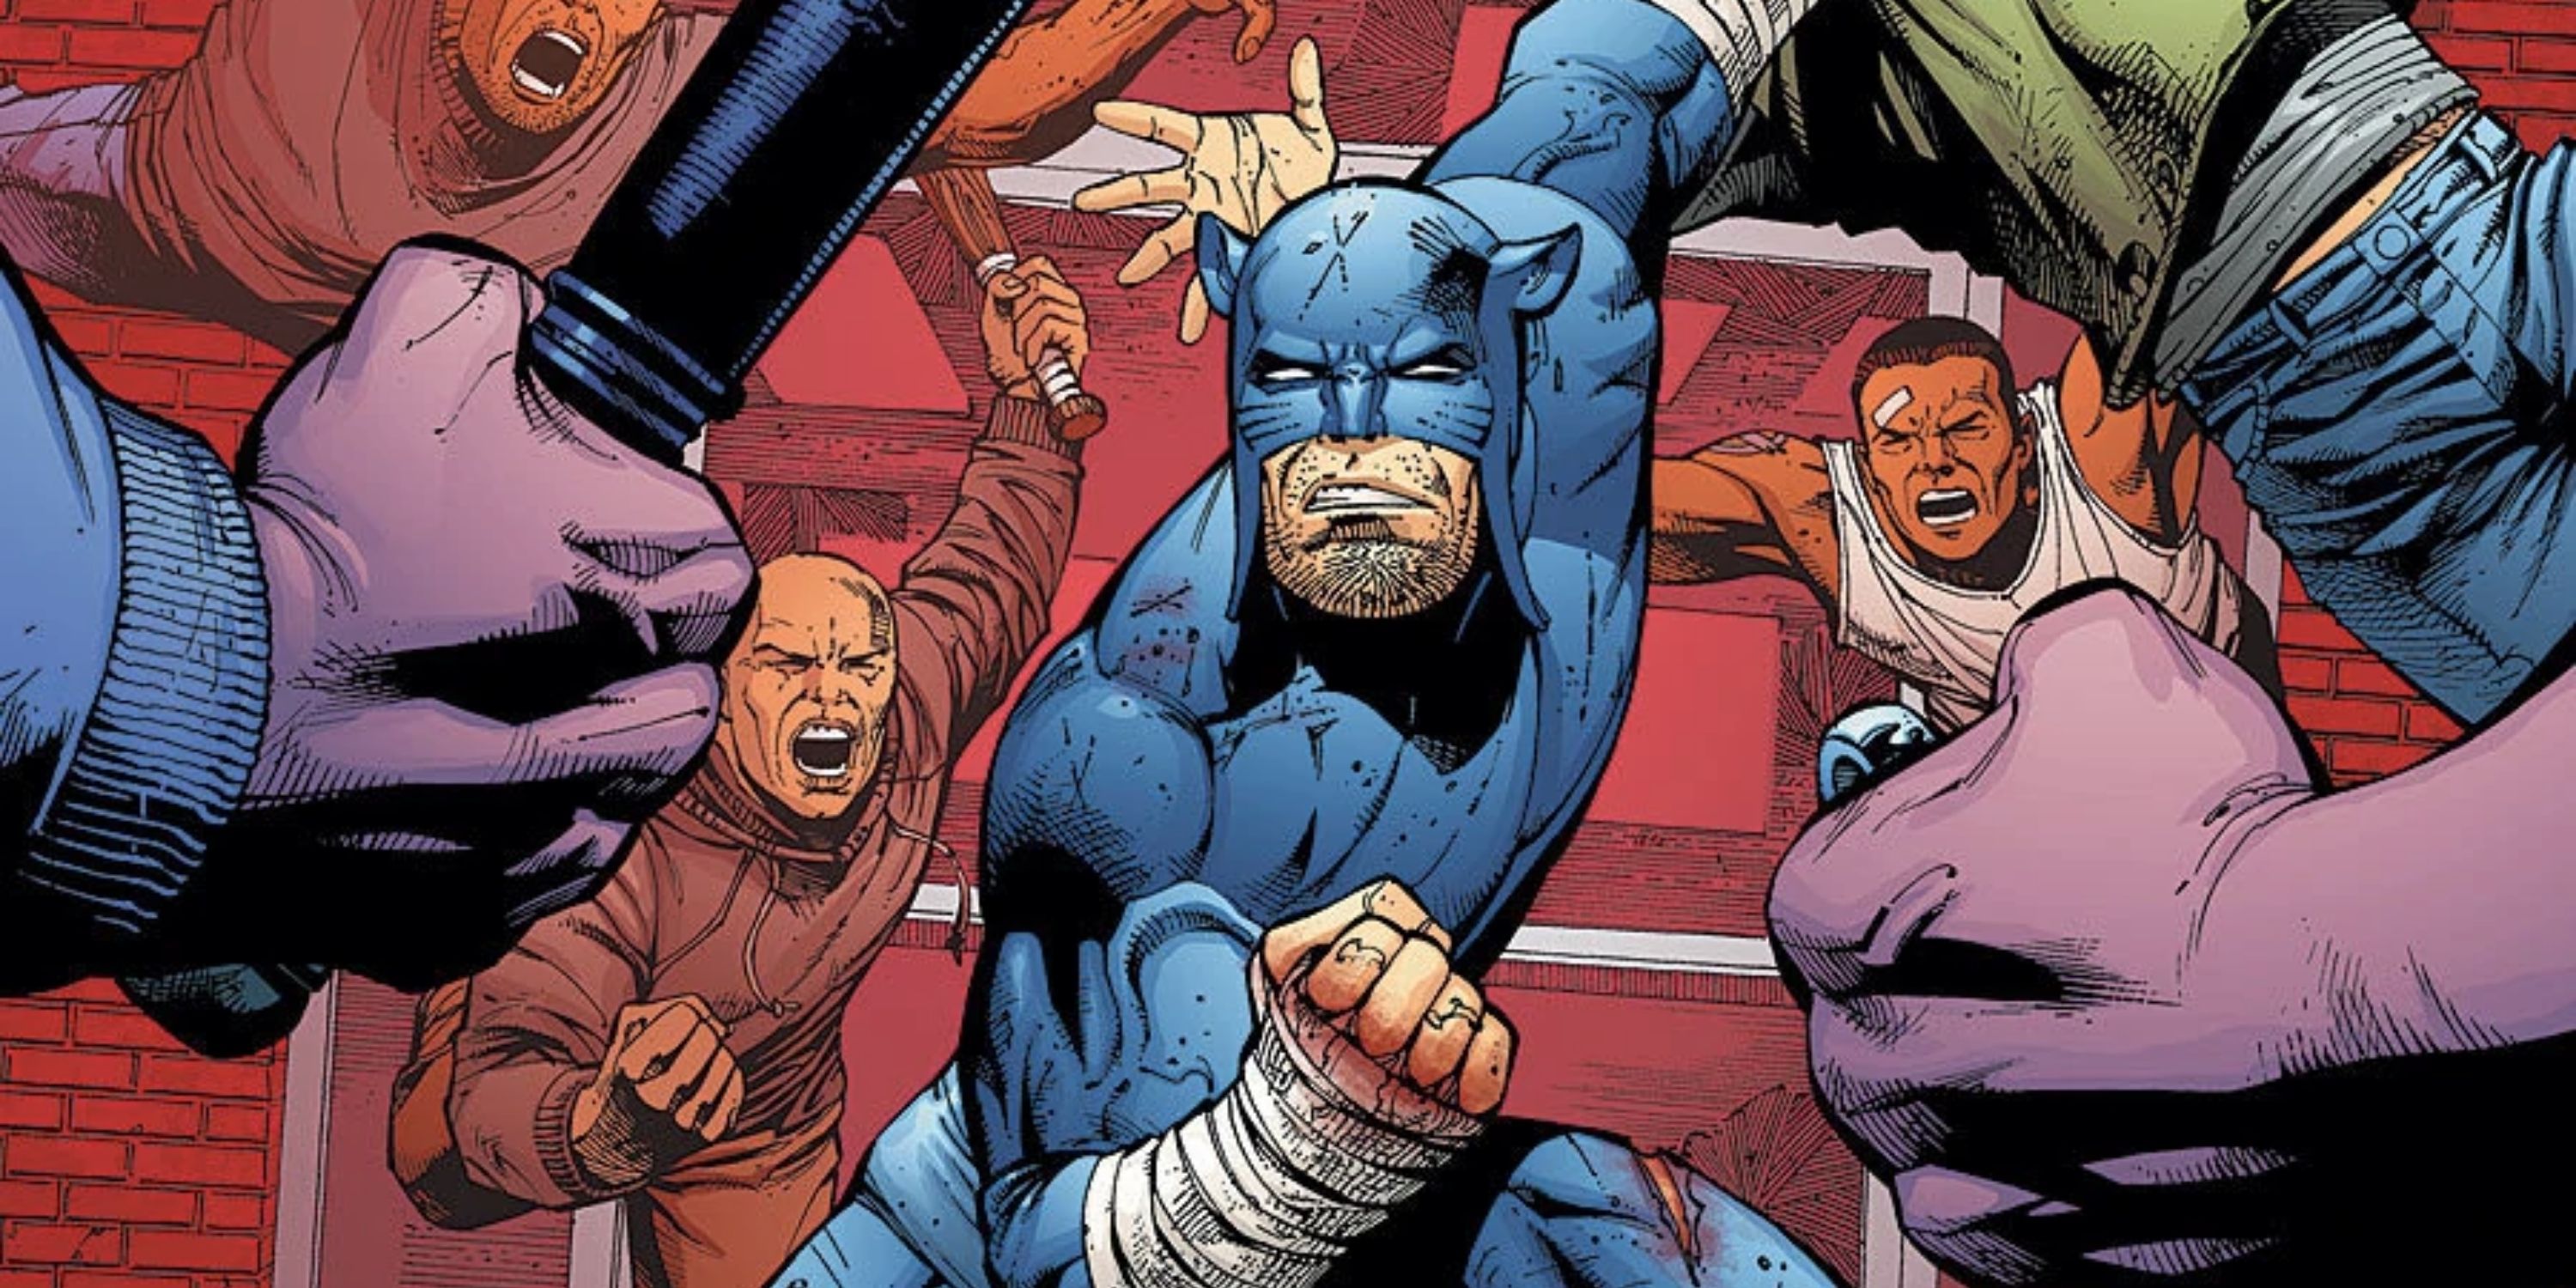 Wildcat in DC comics fighting thugs